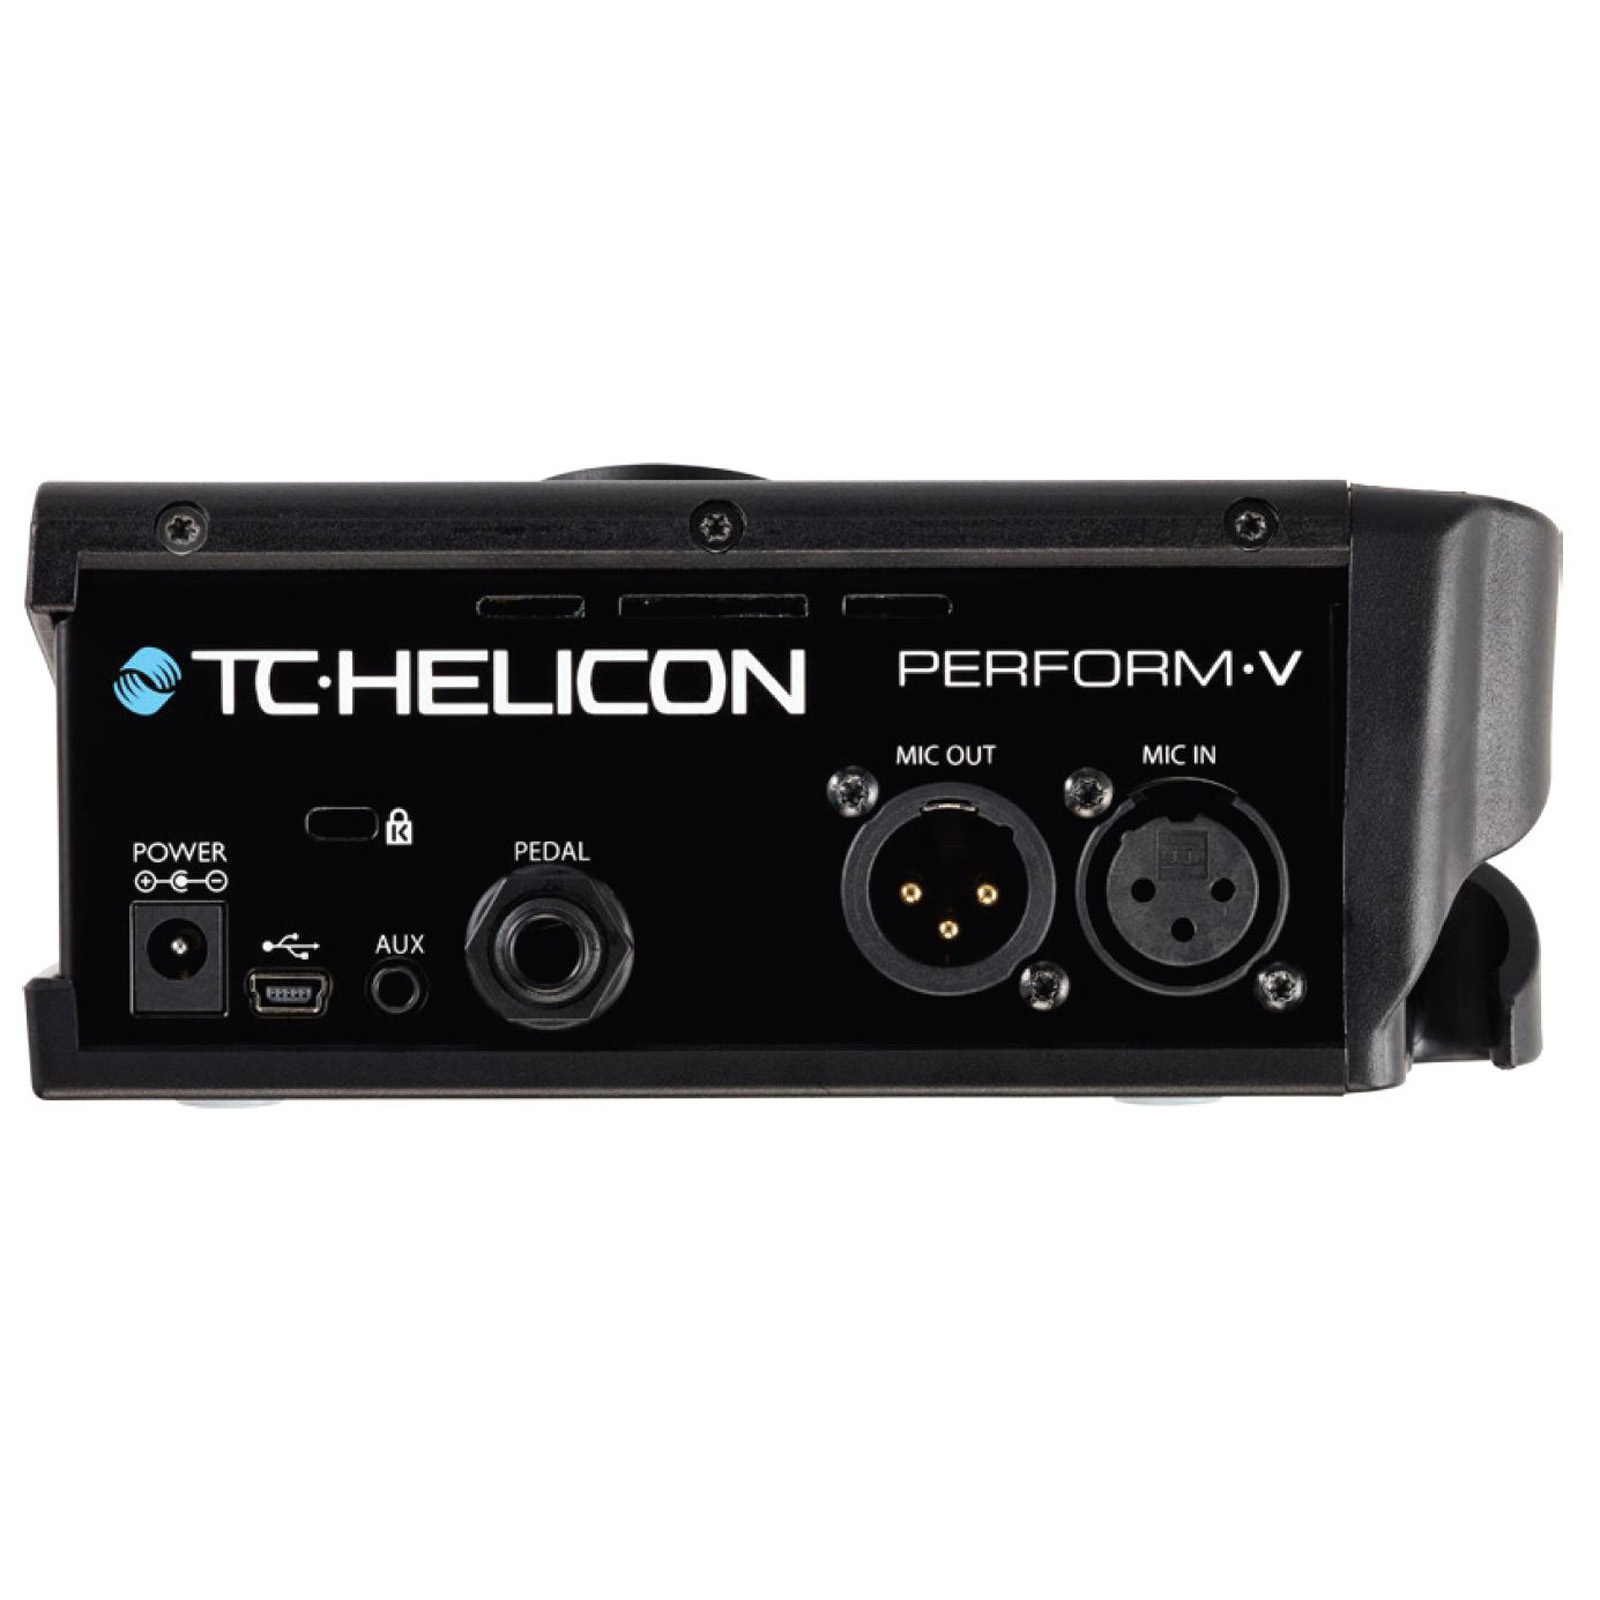 Вокальный процессор эффектов. TC Helicon perform-v. TC Helicon perform-v процессор эффектов. Вокальный процессор TC Helicon. TC Electronic вокальный процессор.